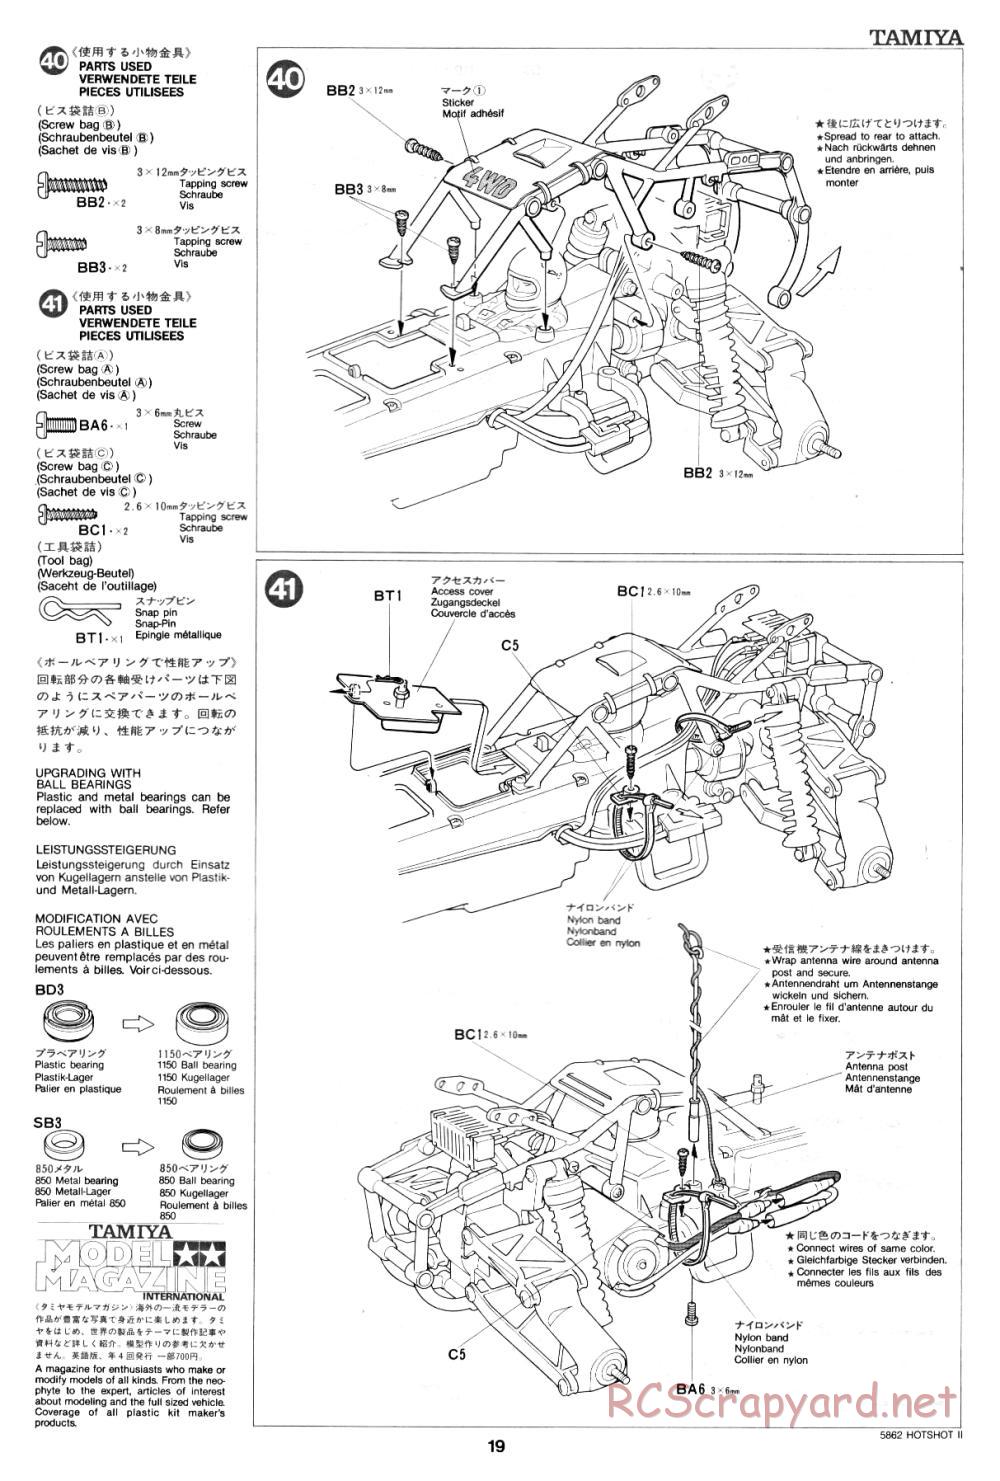 Tamiya - Hot-Shot II - 58062 - Manual - Page 19